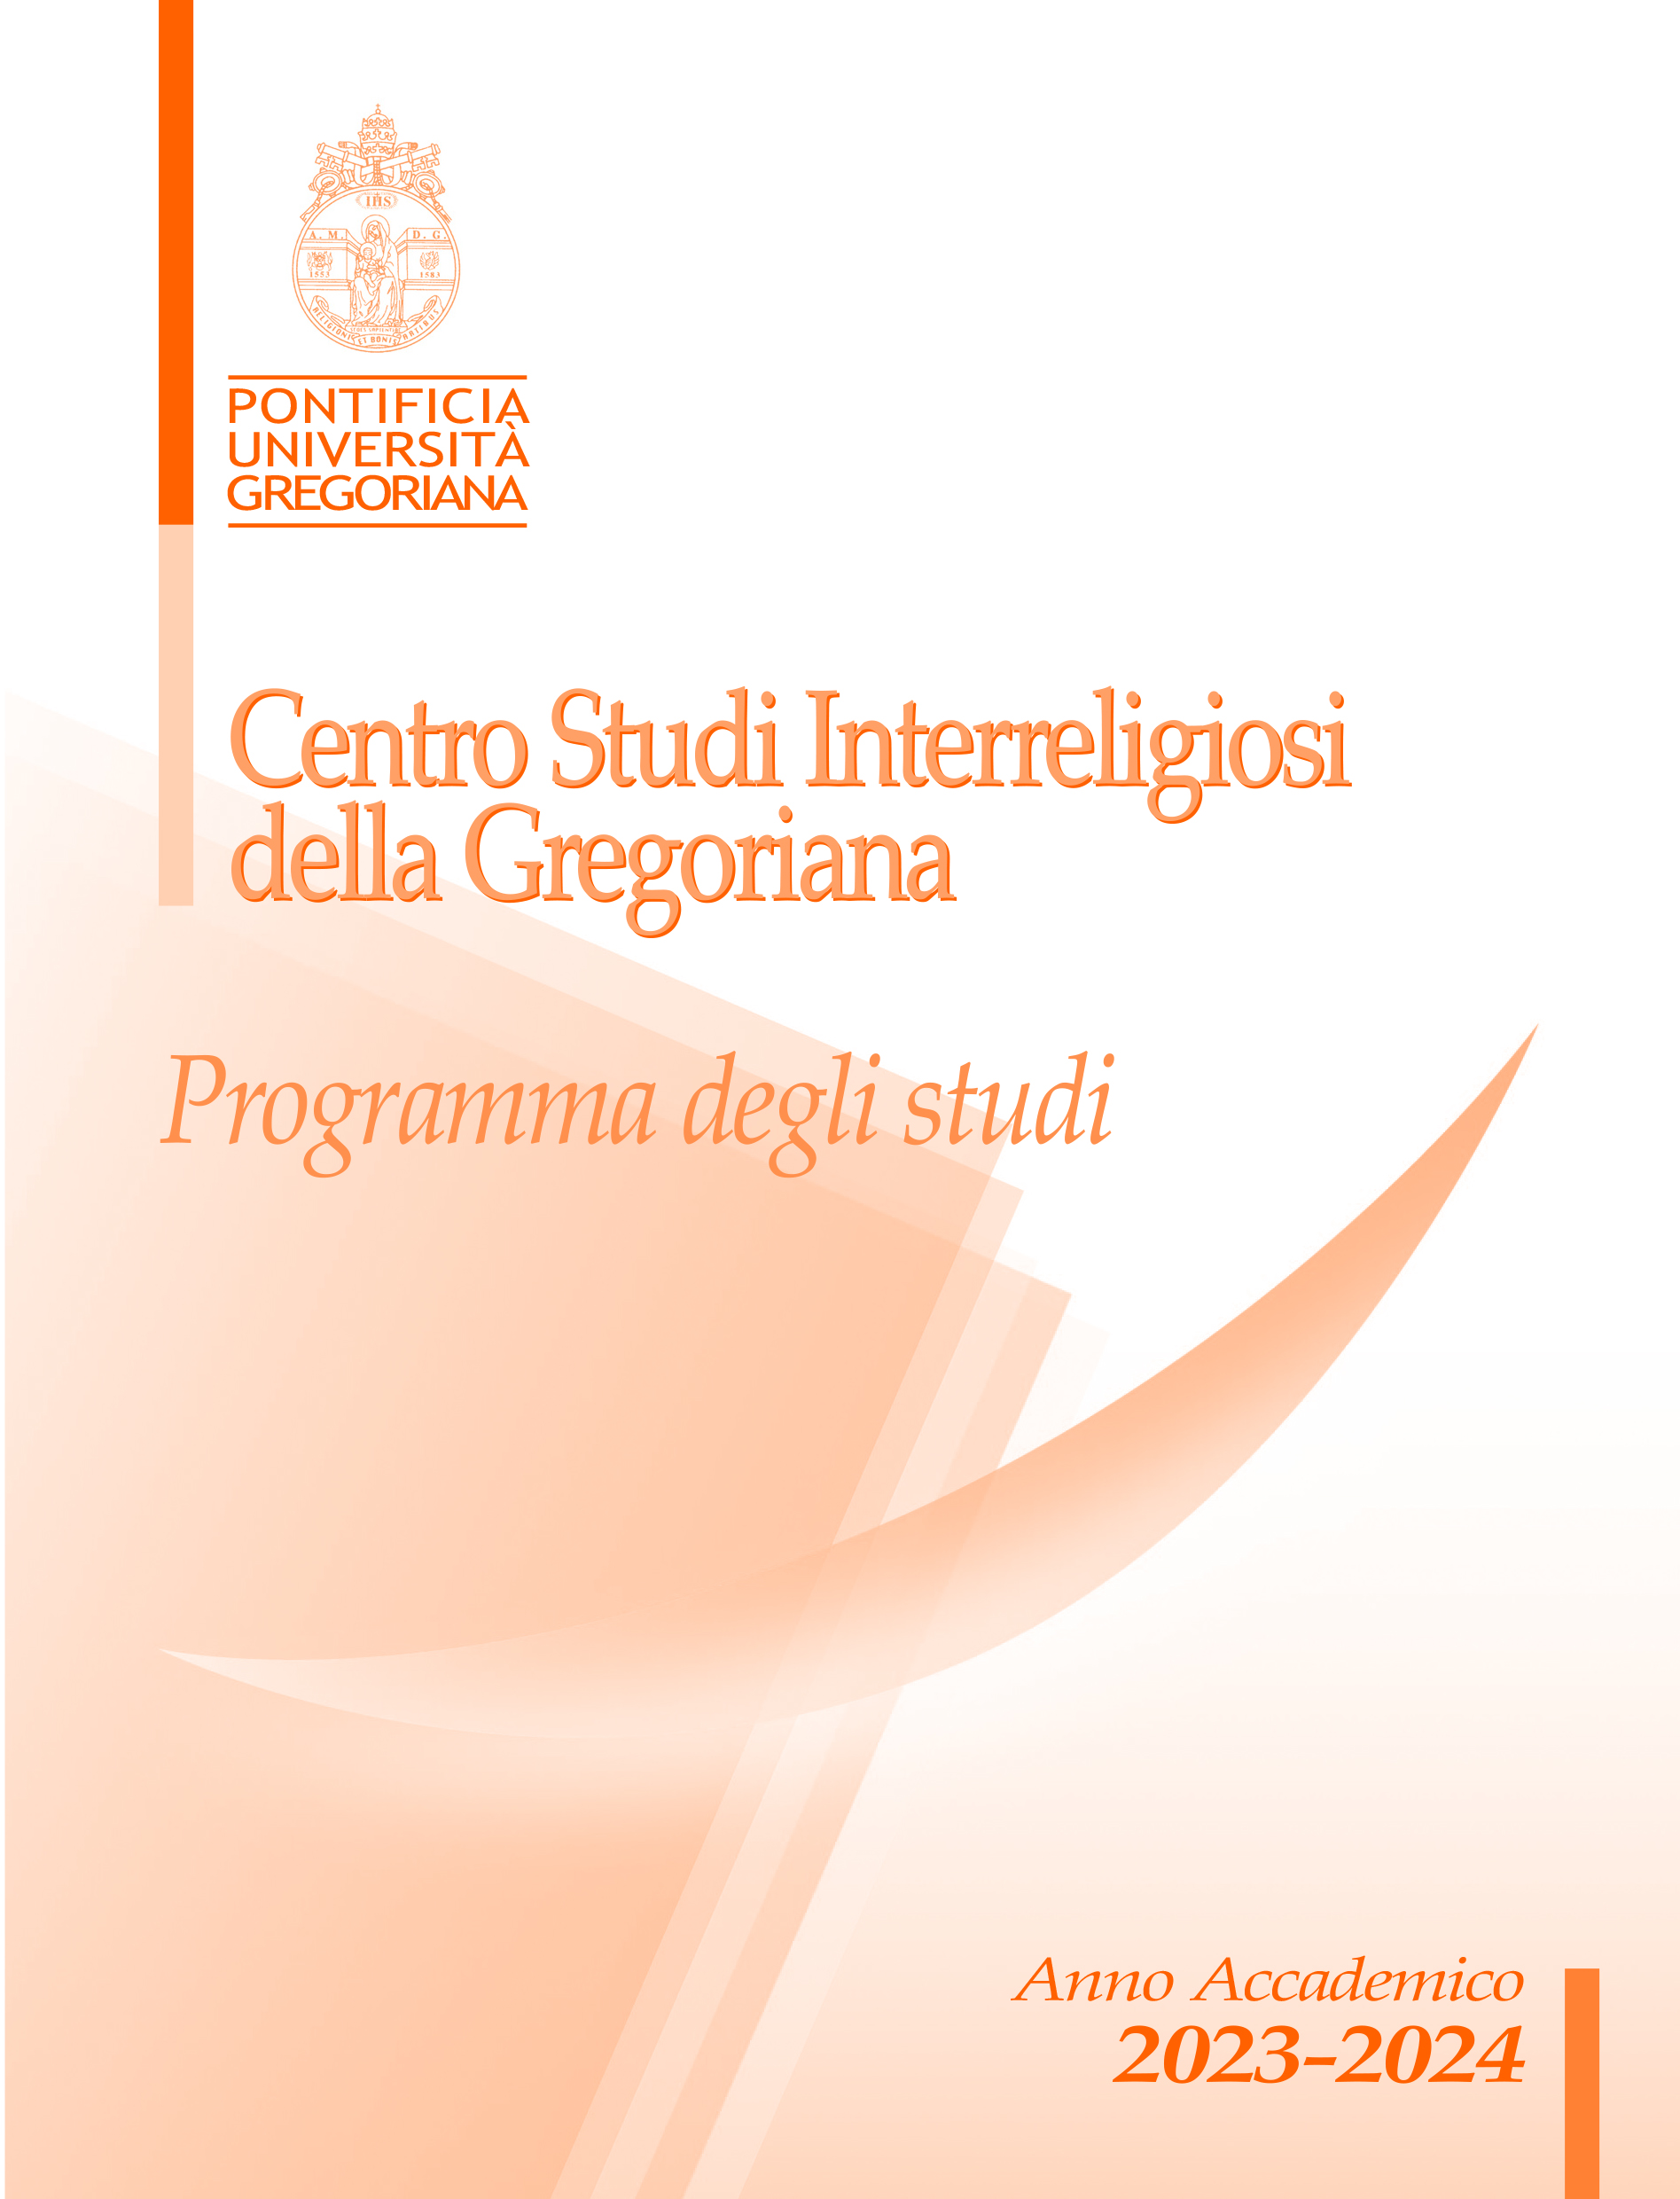 Gregorian Centre for Interreligious Studies